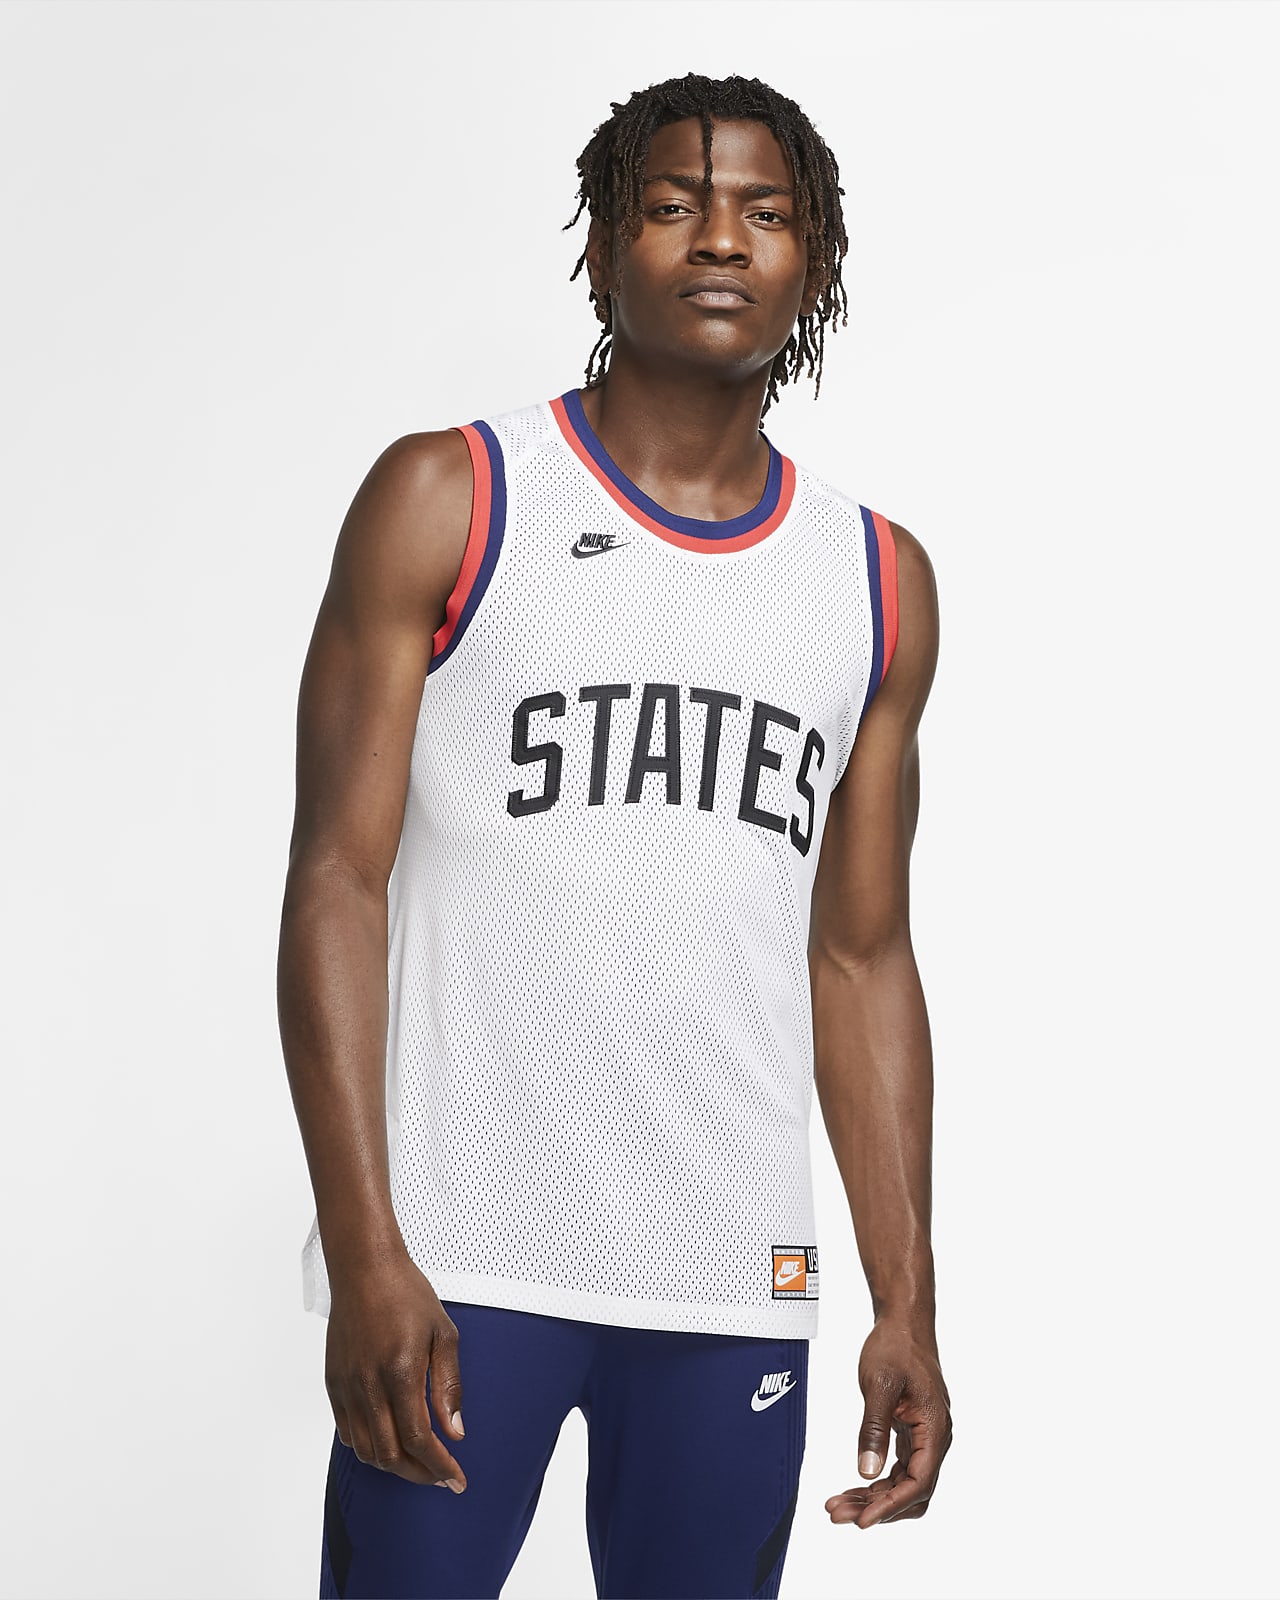 Completo Fuera de Fundir U.S. Men's Basketball Top. Nike.com